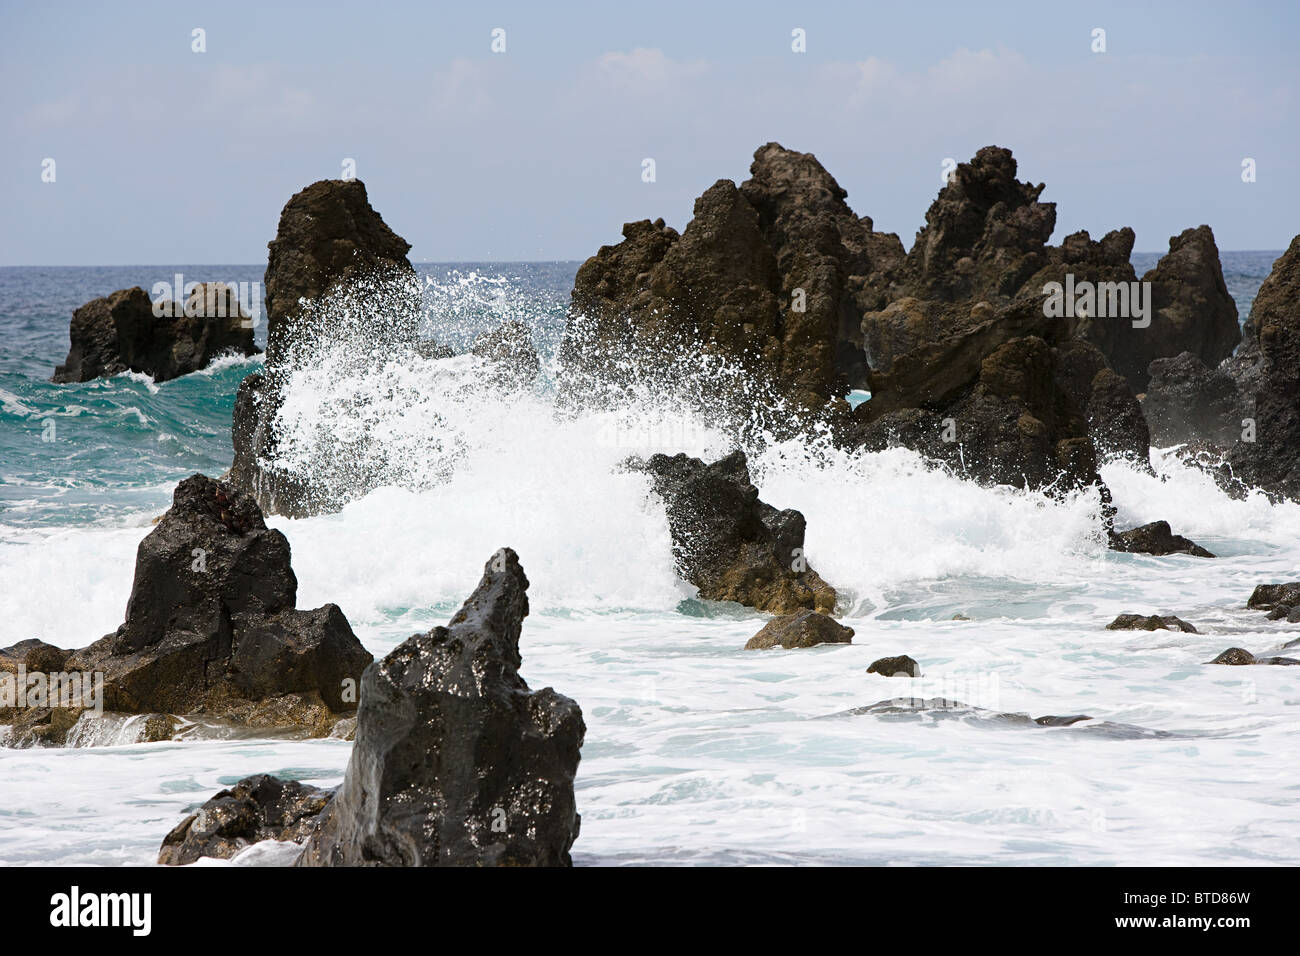 Sea and black lava rocks, Los Hervideros, Lanzarote Stock Photo